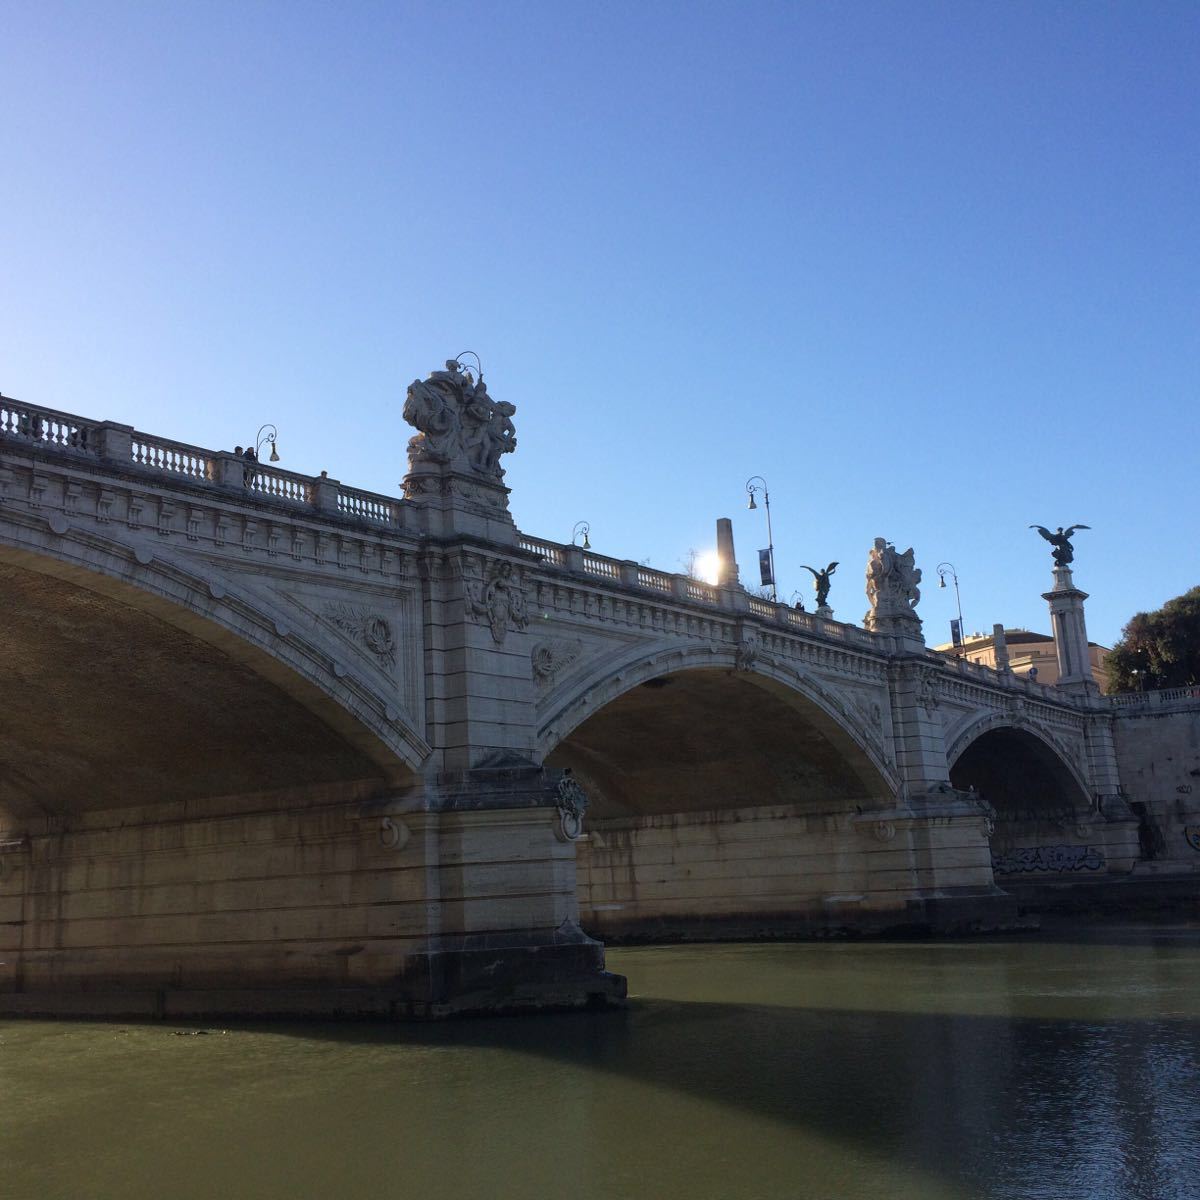 【携程攻略】罗马圣天使桥景点,罗马假日里经典重温,非常喜欢这里